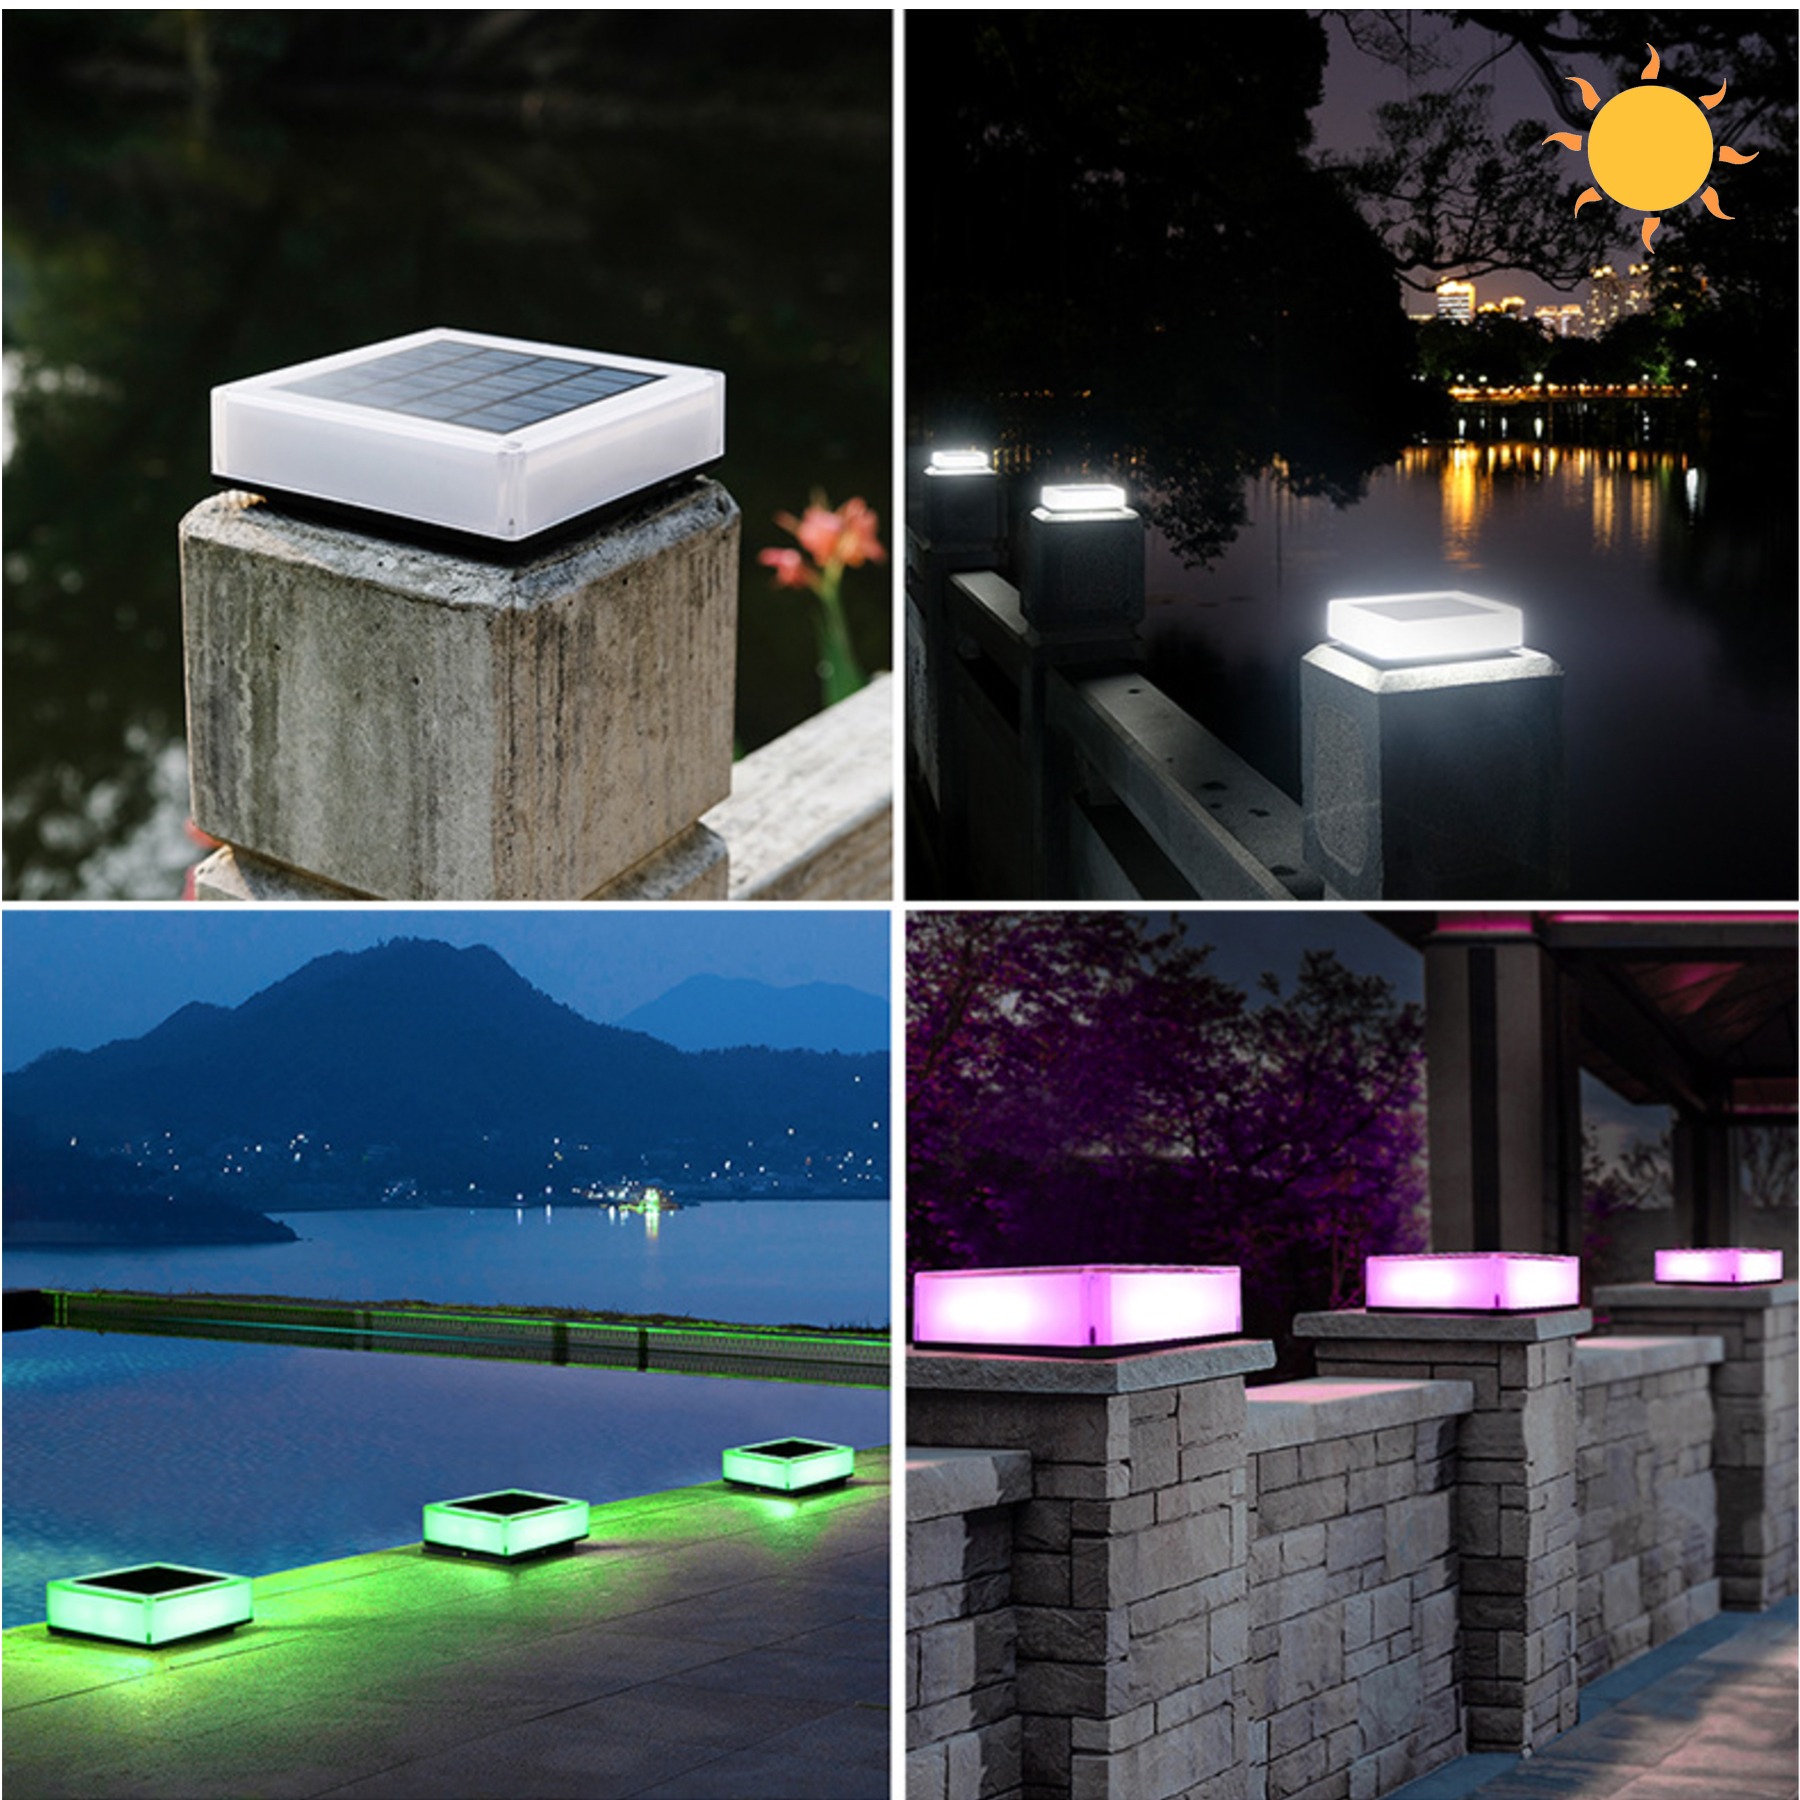 HVB-K51-A 태양광 LED 정원등 솔라투광등 야외 조명 테라스